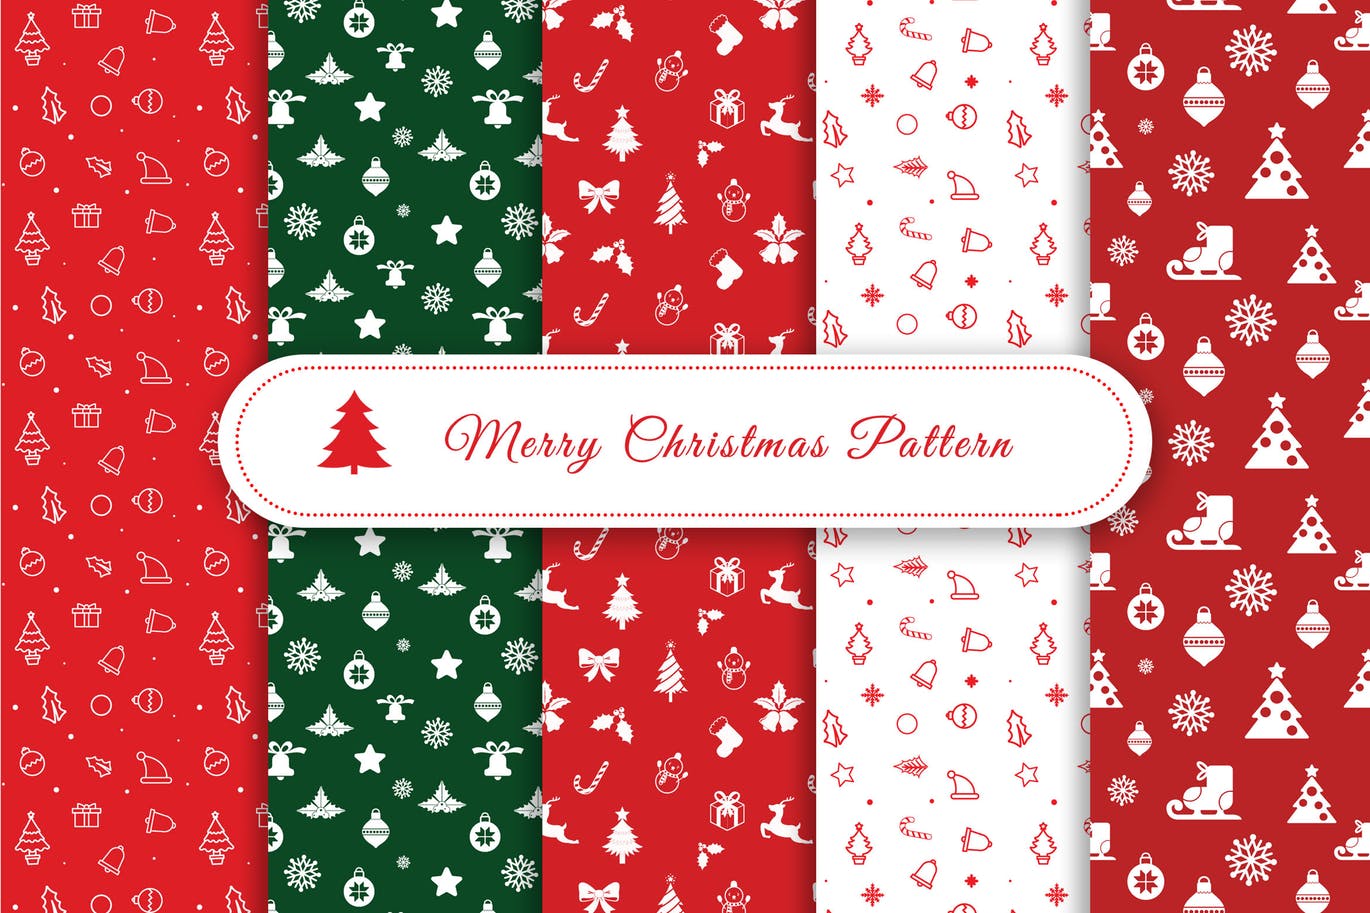 圣诞节元素图案矢量无缝背景纹理素材包 Merry Christmas Pattern & Digital Paper Pack插图